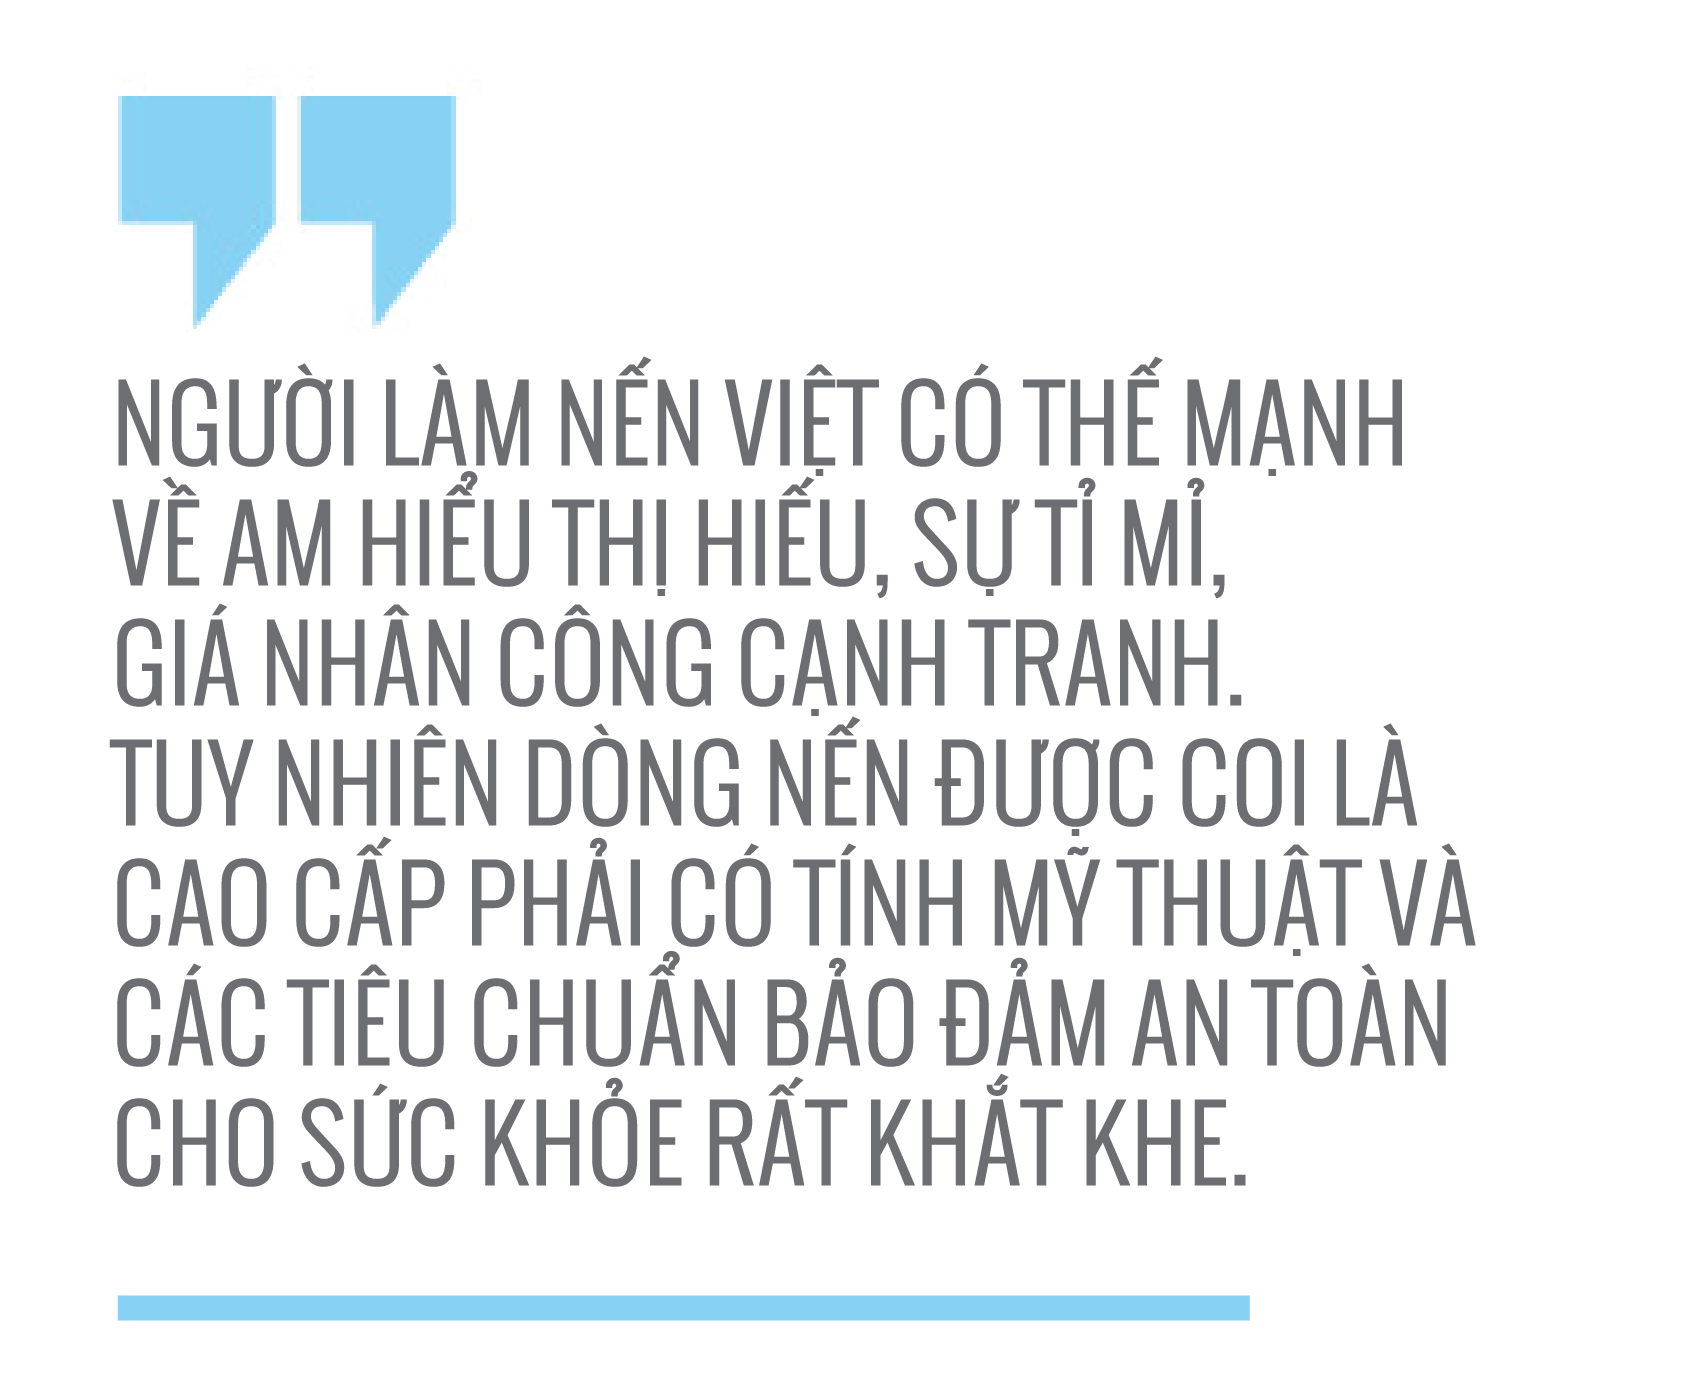 Bà Nguyễn Thị Kim Oanh, Giám đốc Công ty Nến Nguyên Quang Trung -16